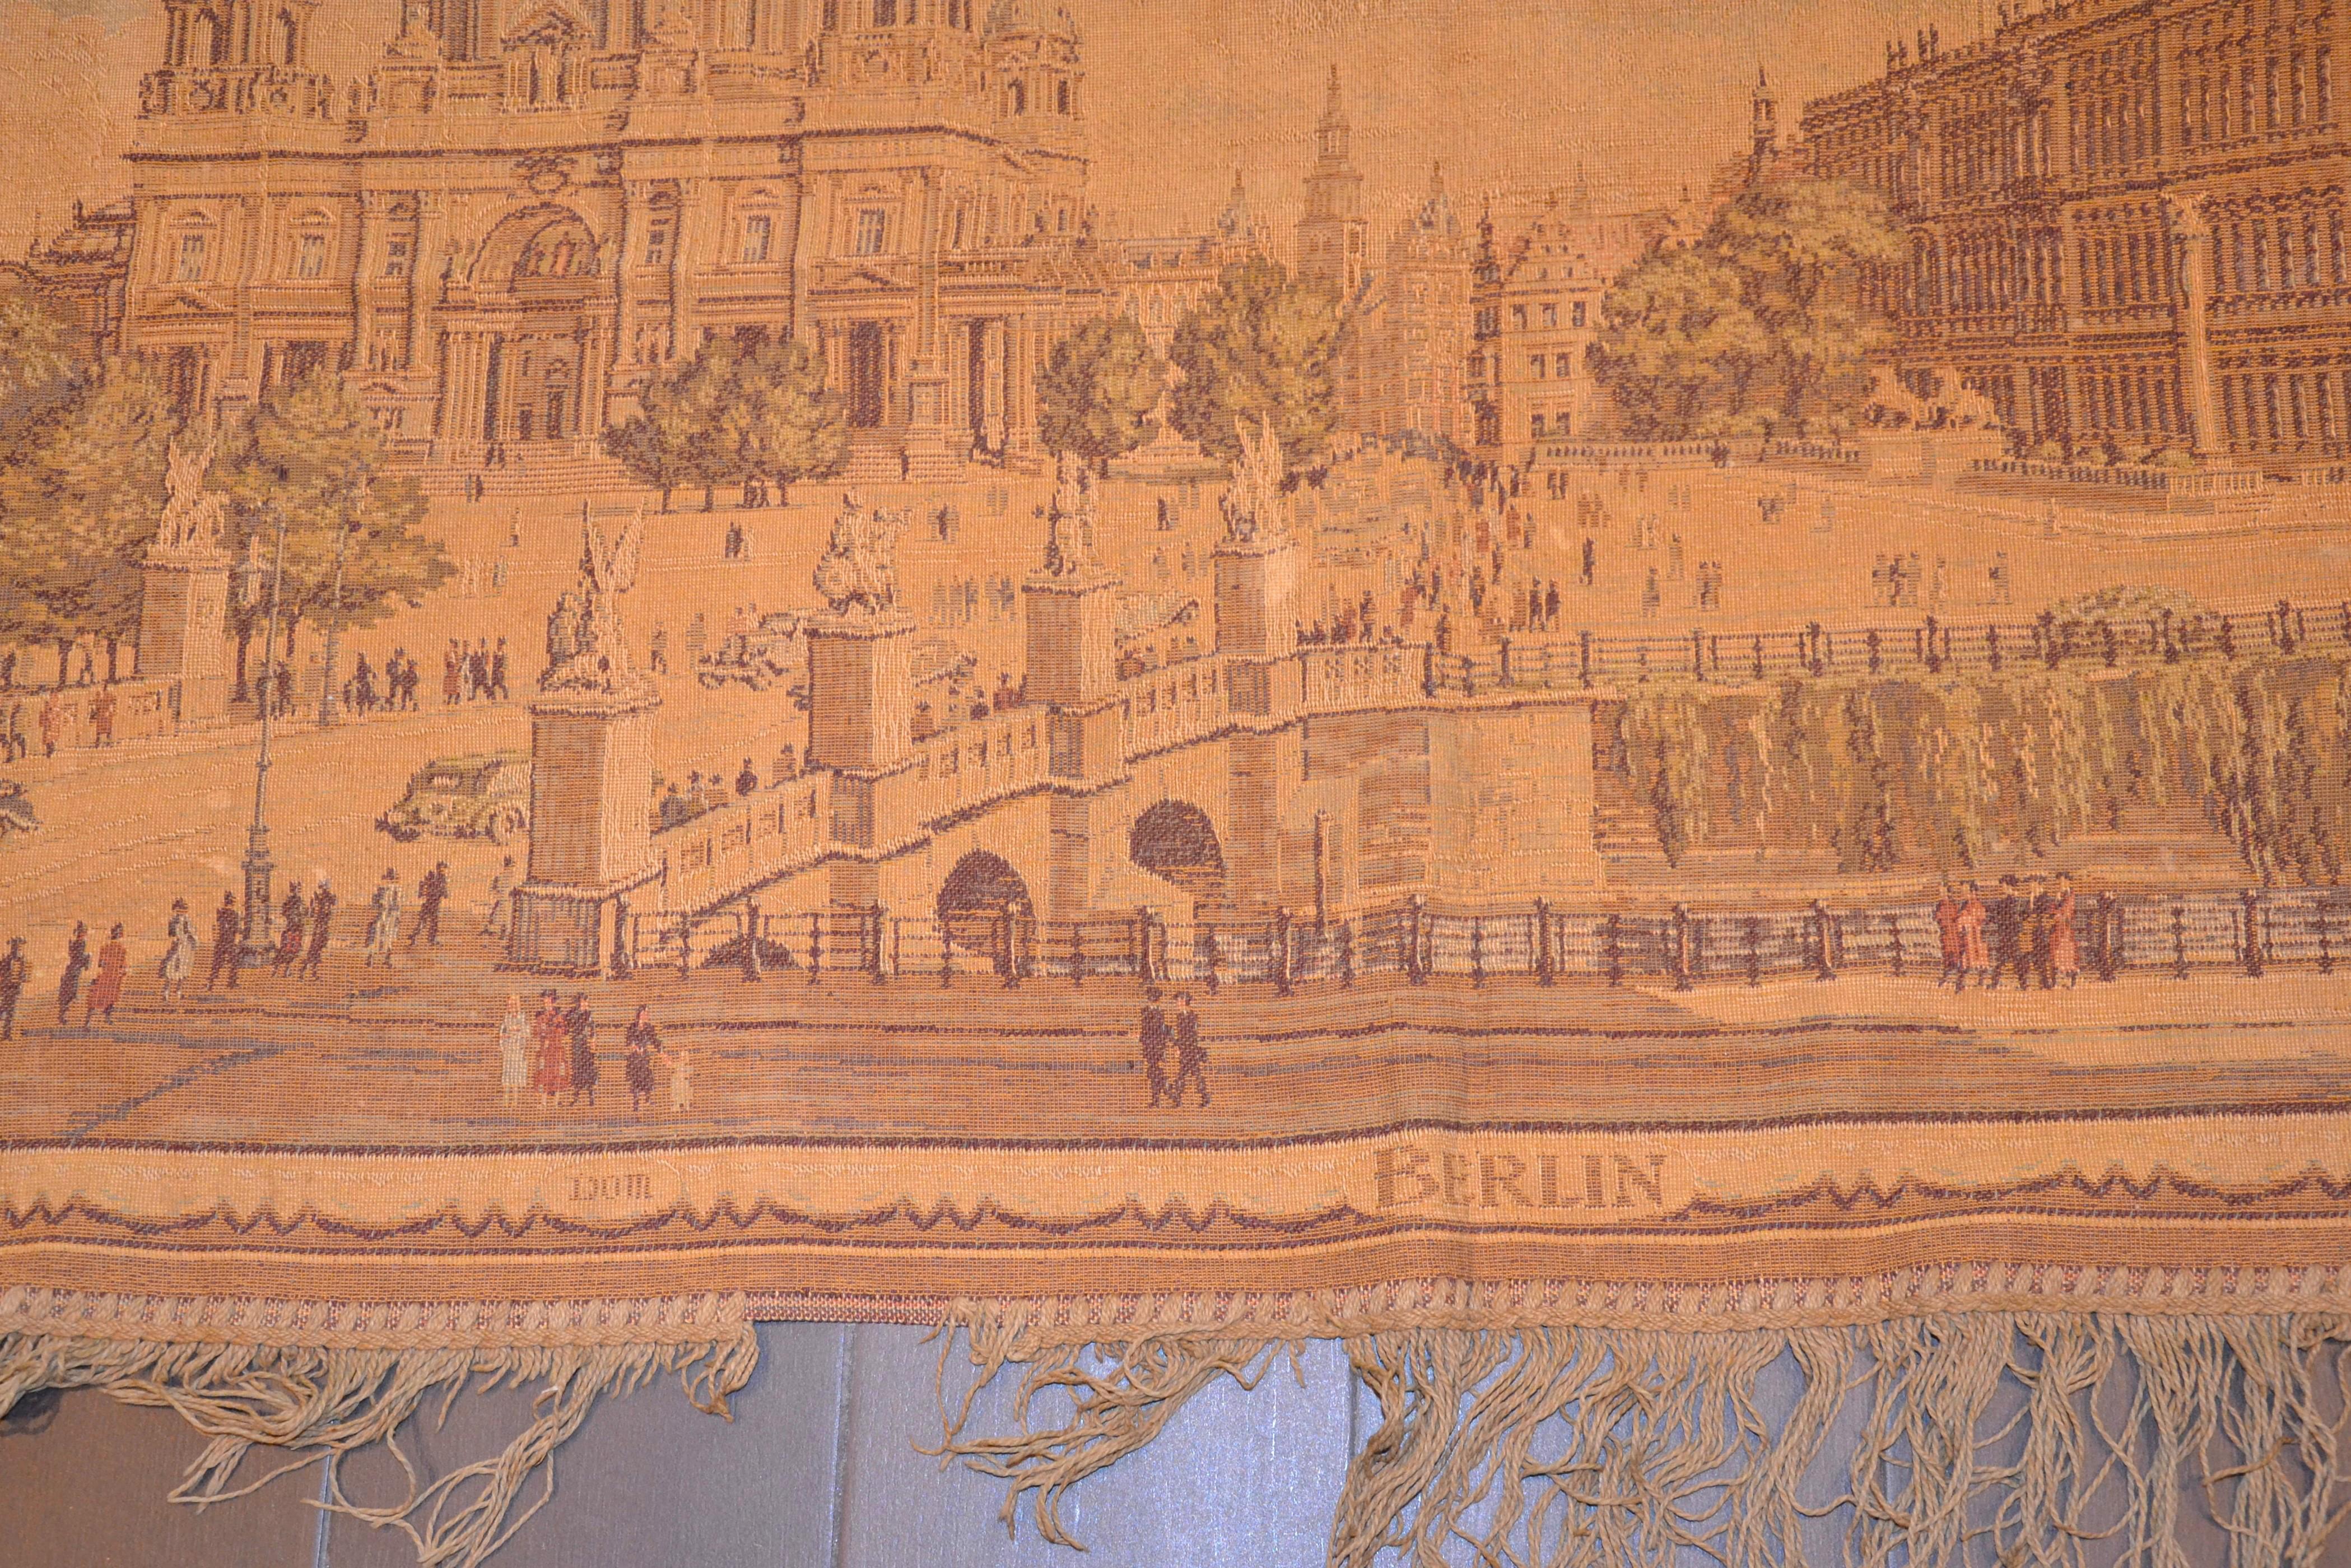 Vintage Tapestry - Munich Olympic Games 1936 ist ein seltenes originales Dekorationsobjekt von Otto Baumgärtel aus dem Jahr 1936.

Dieser schöne und sehr seltene Wandteppich wurde anlässlich der Olympischen Spiele 1936 in Berlin angefertigt. 

Guter